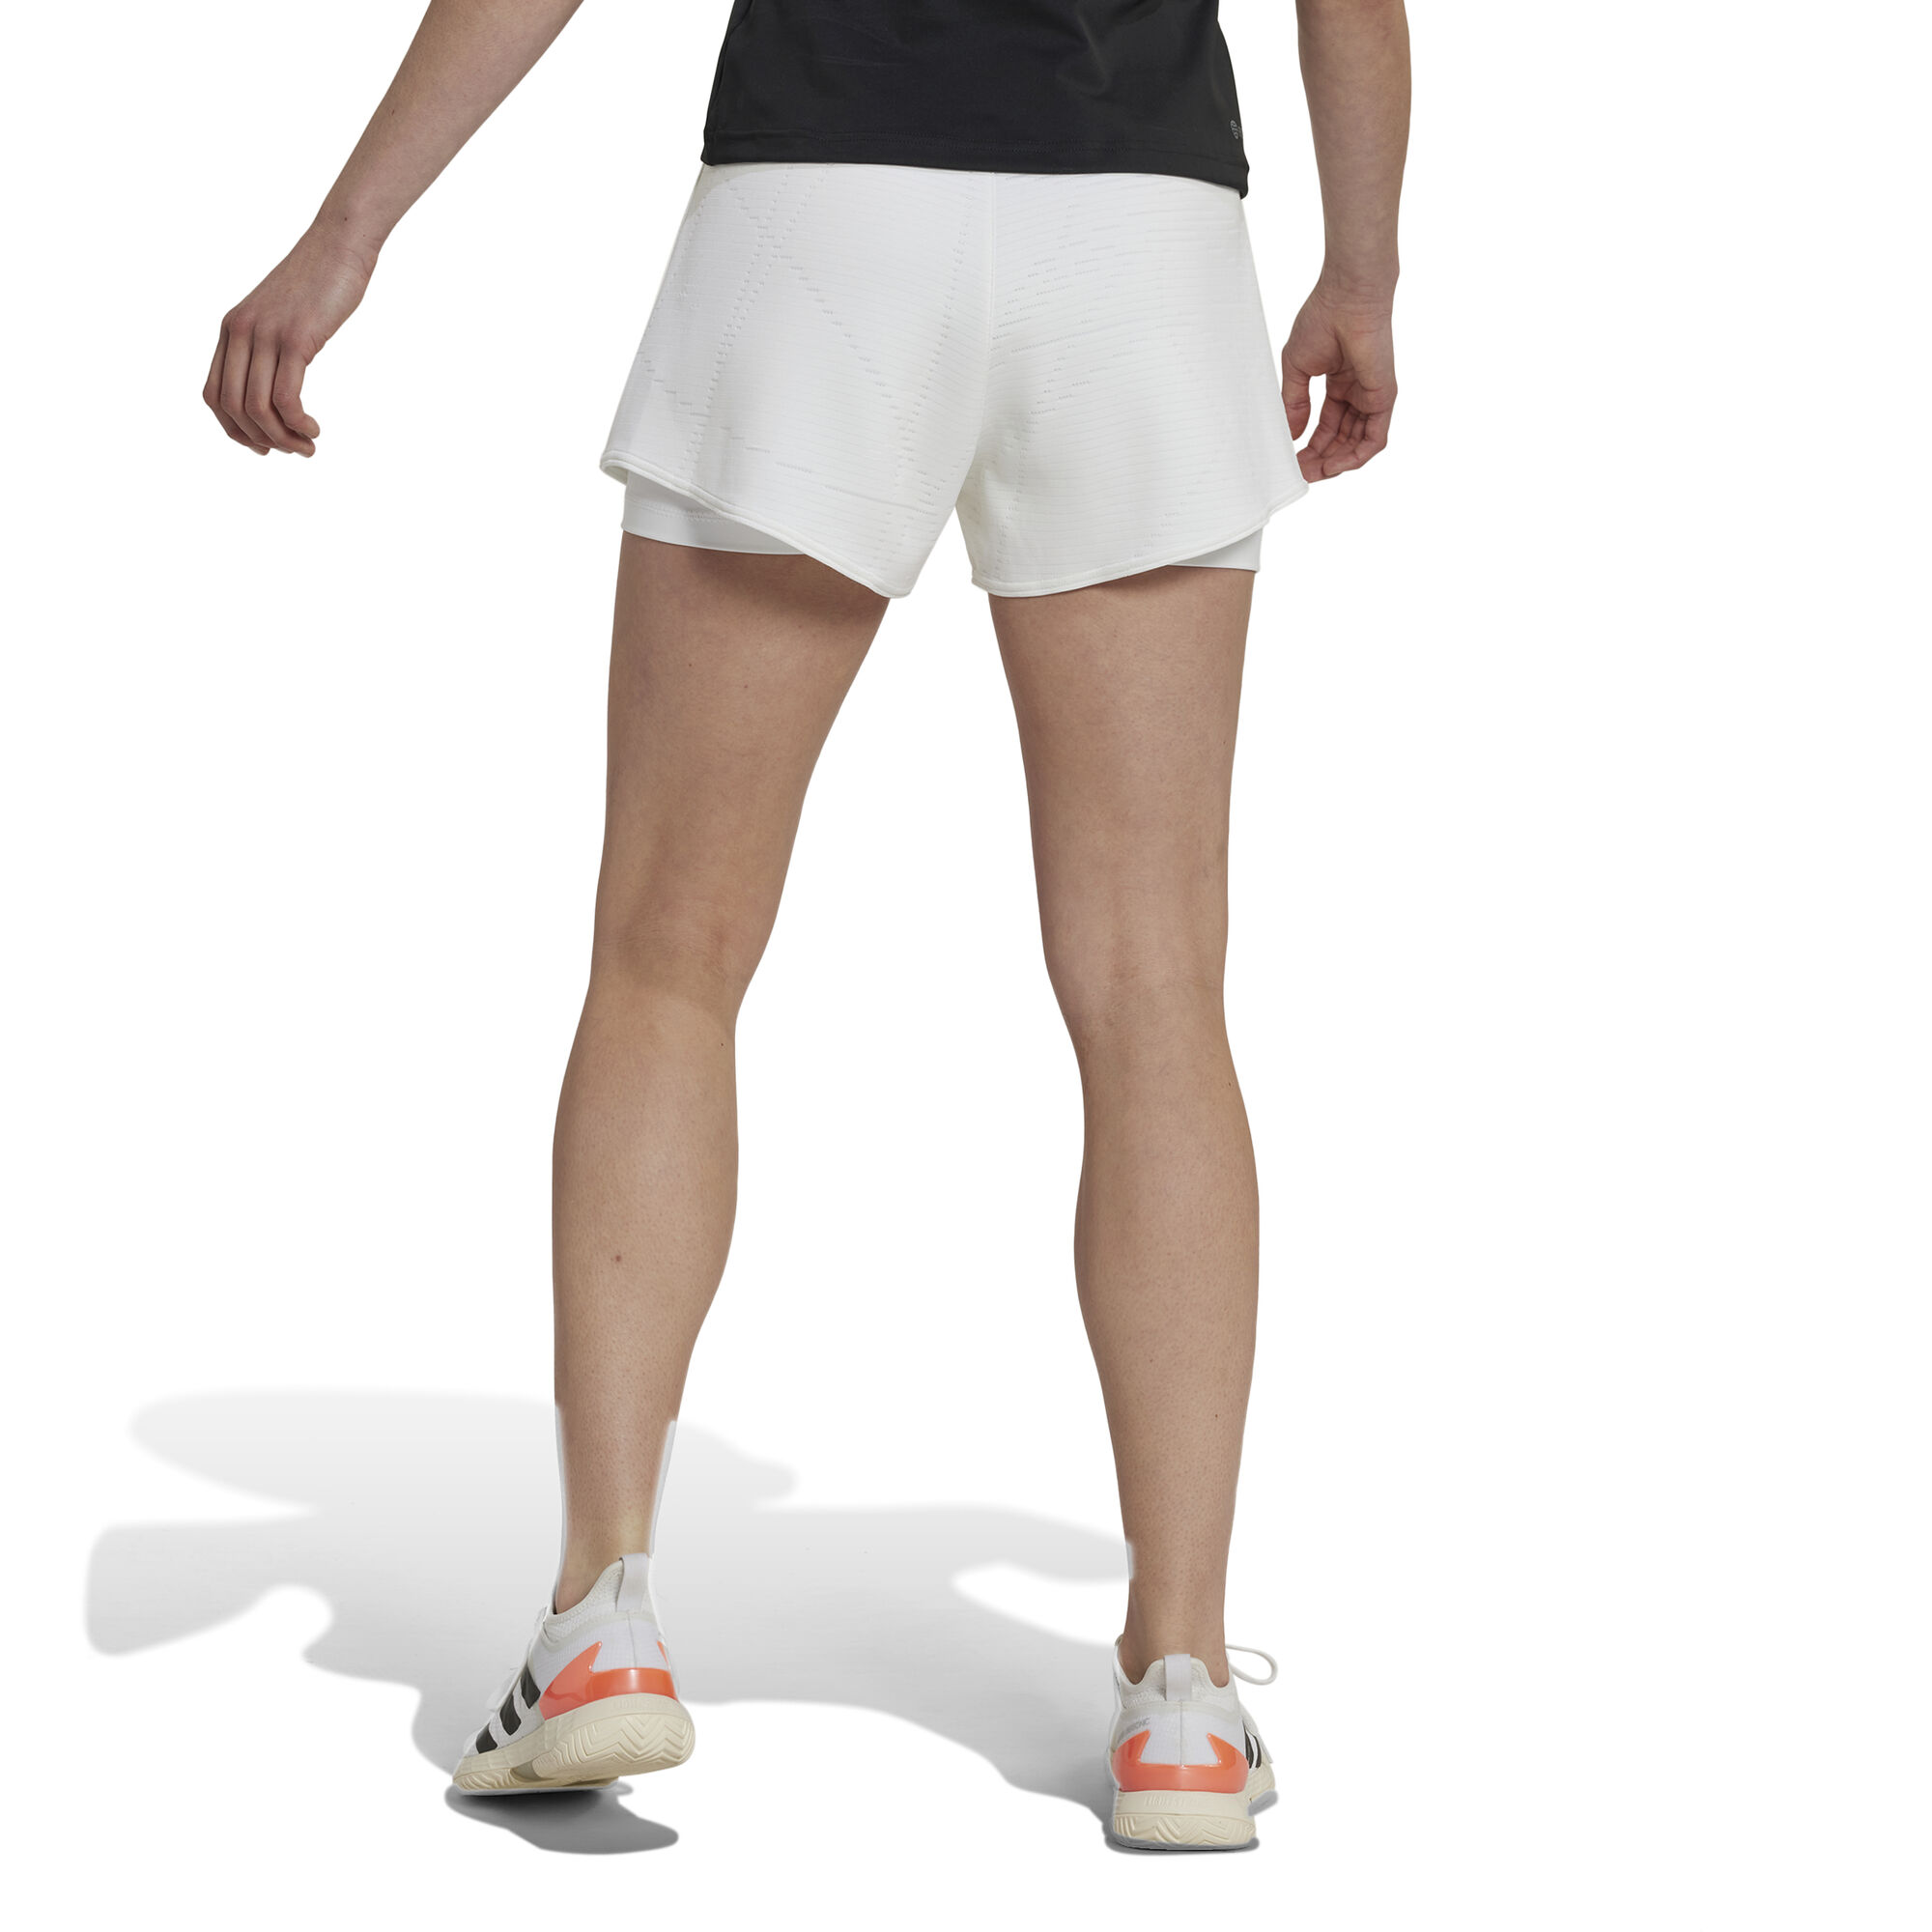 L. SHORT TIGHTS Running shorts - Women - Diadora Online Store FI